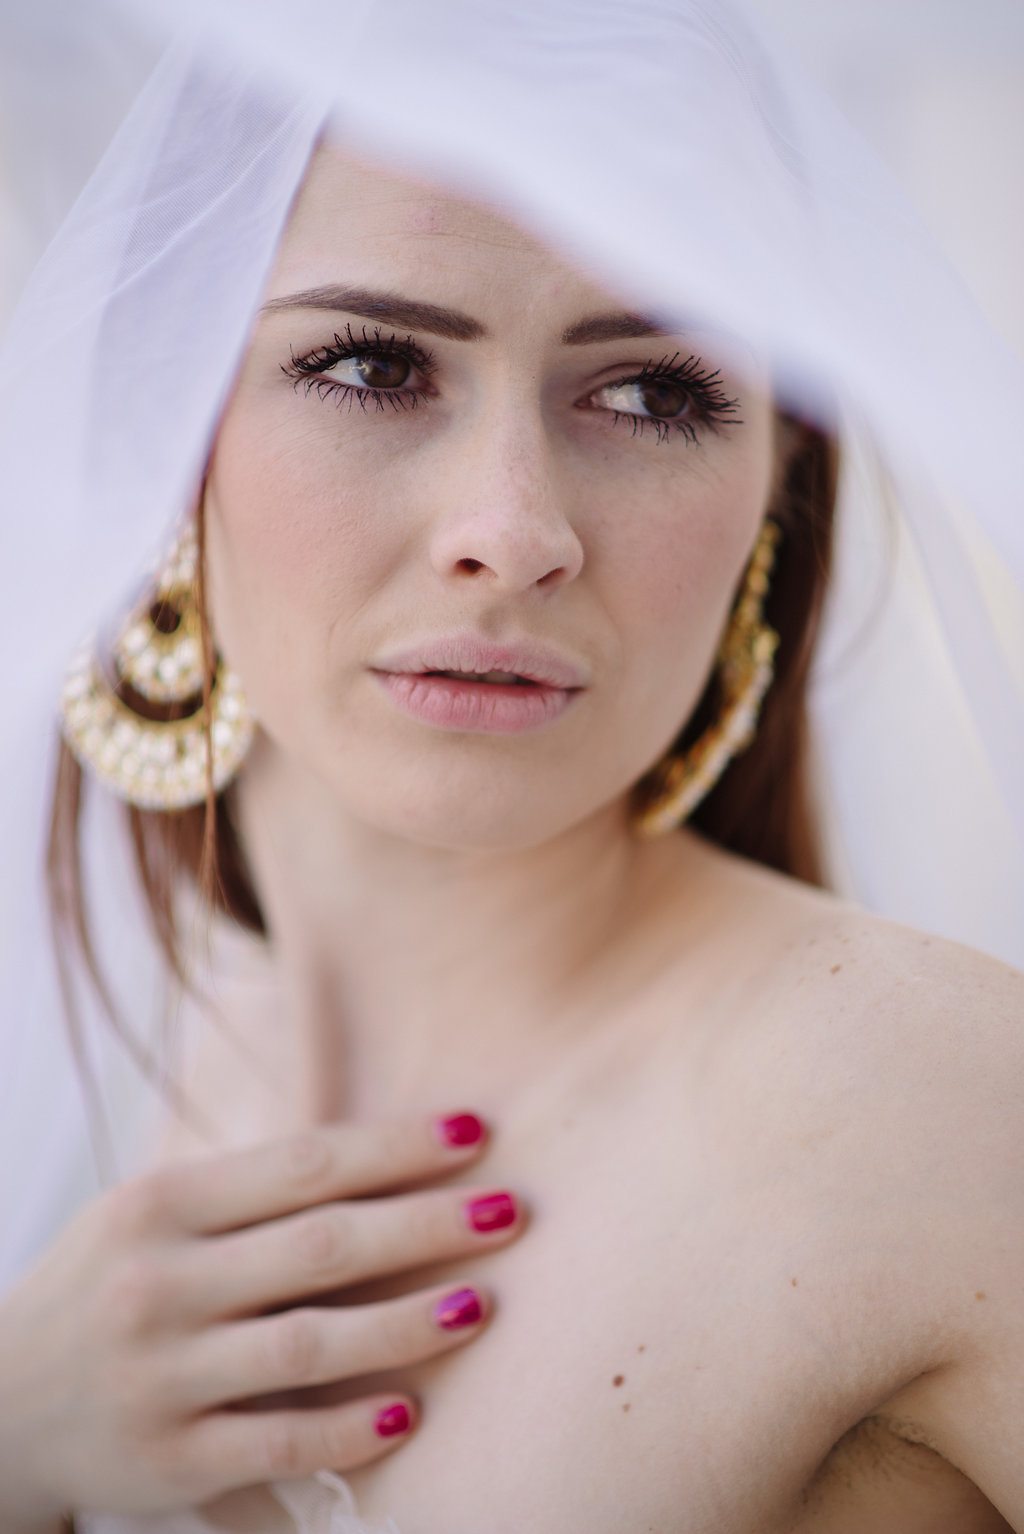 A woman looks on through a wedding veil